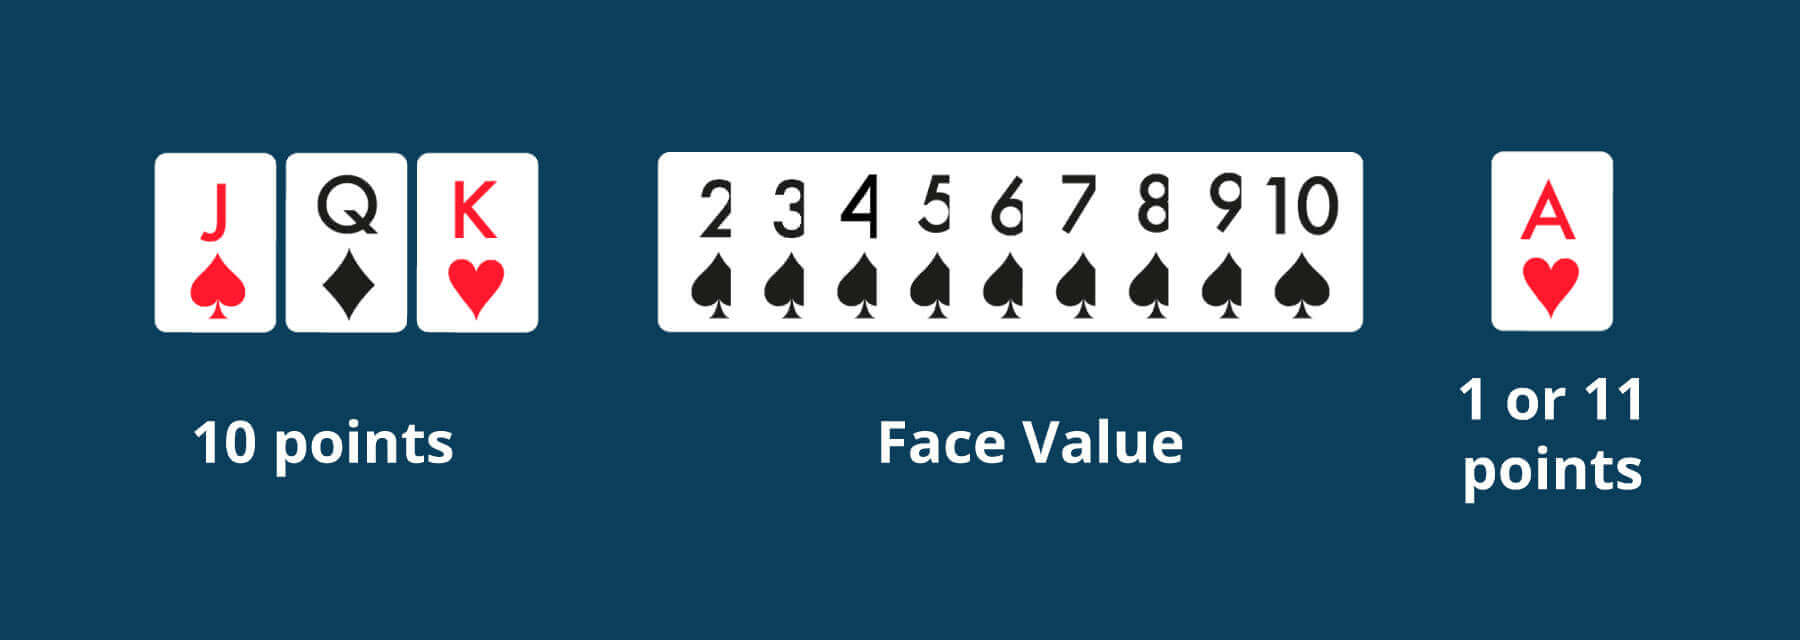 Online Blackjack face cards - Emirates Casino Blackjack Guide
